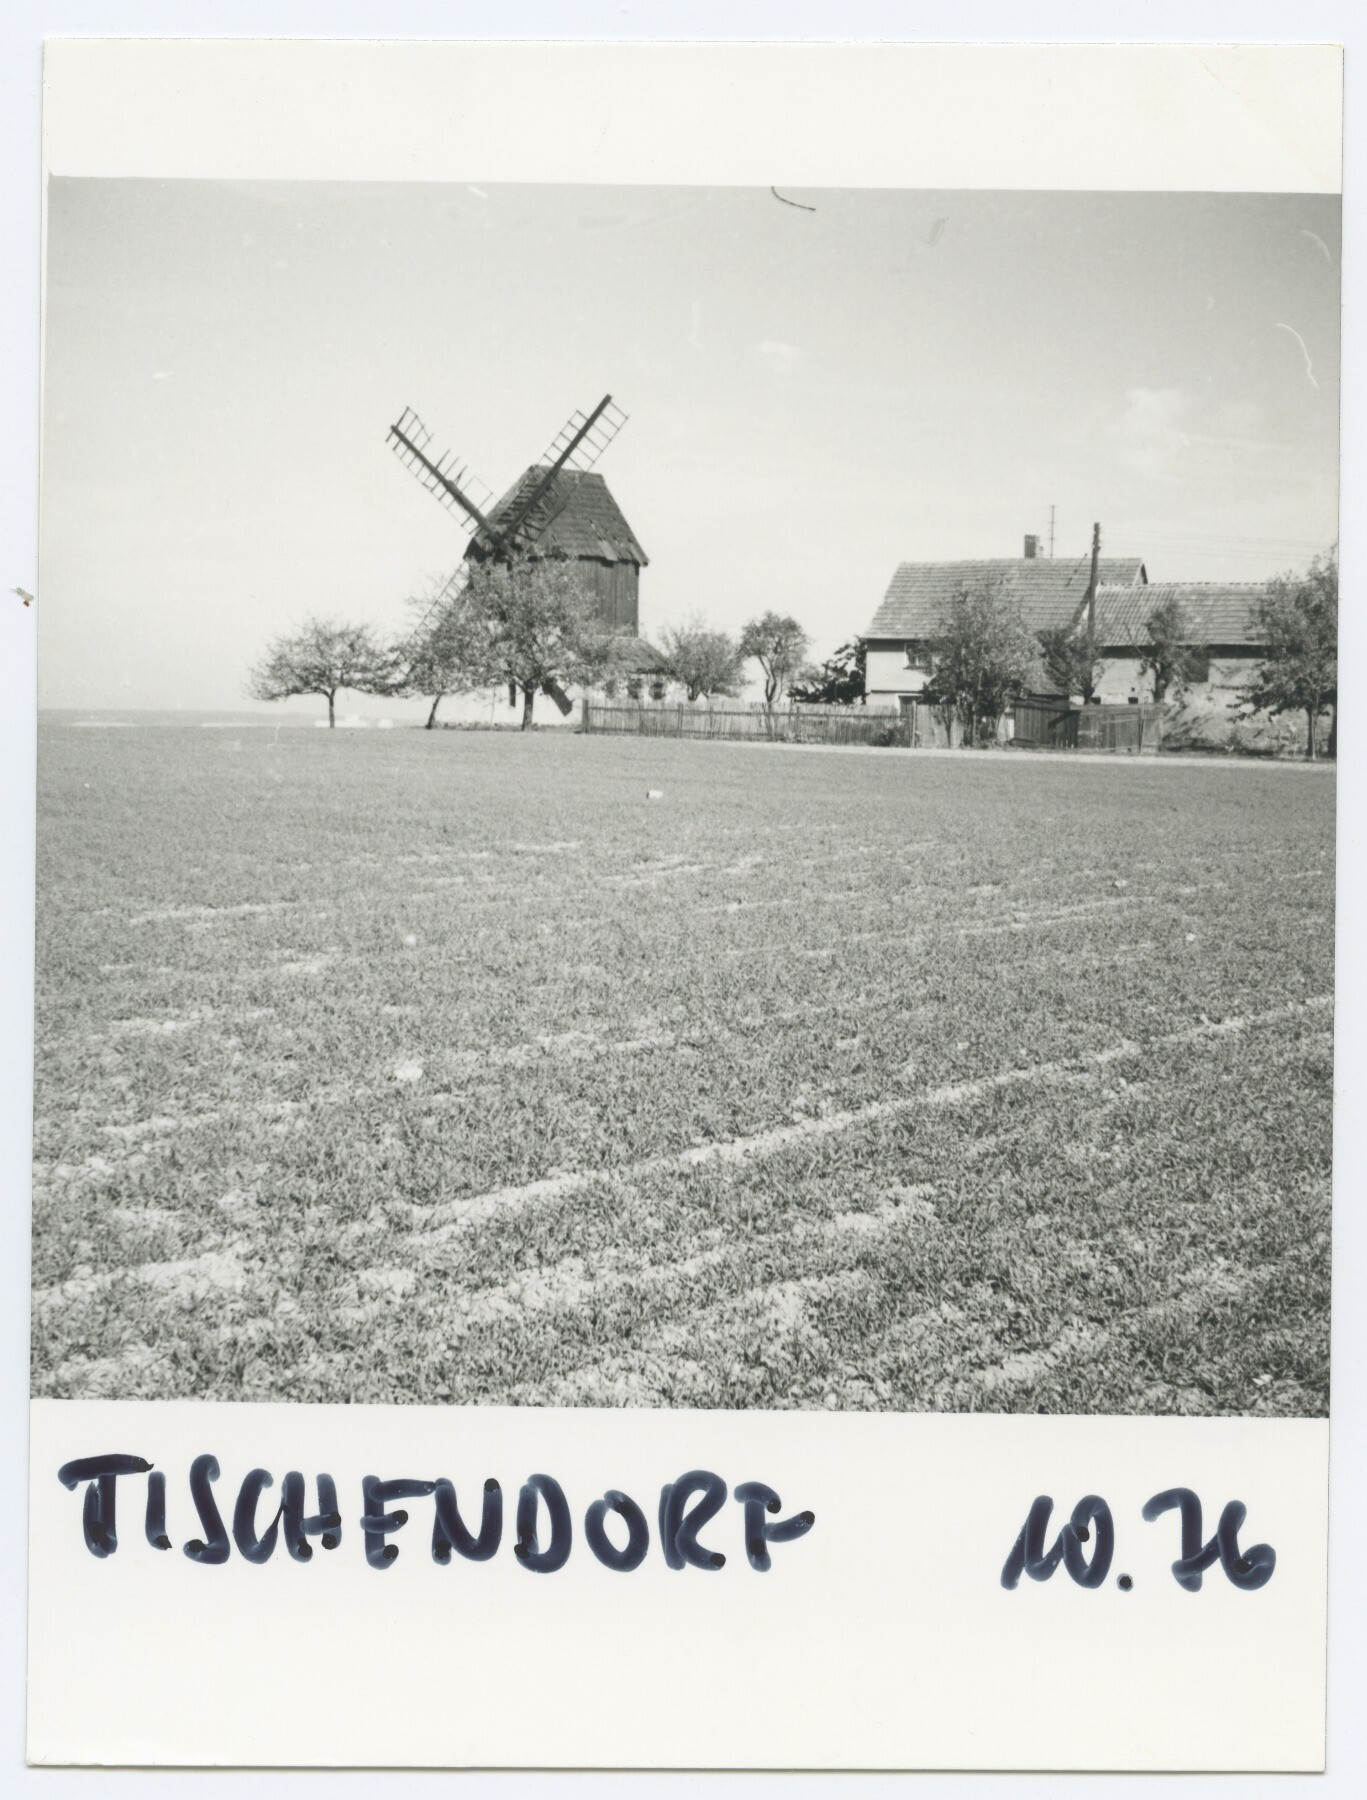 Bockwindmühle Tischendorf (Historische Mühle von Sanssouci CC BY-NC-ND)